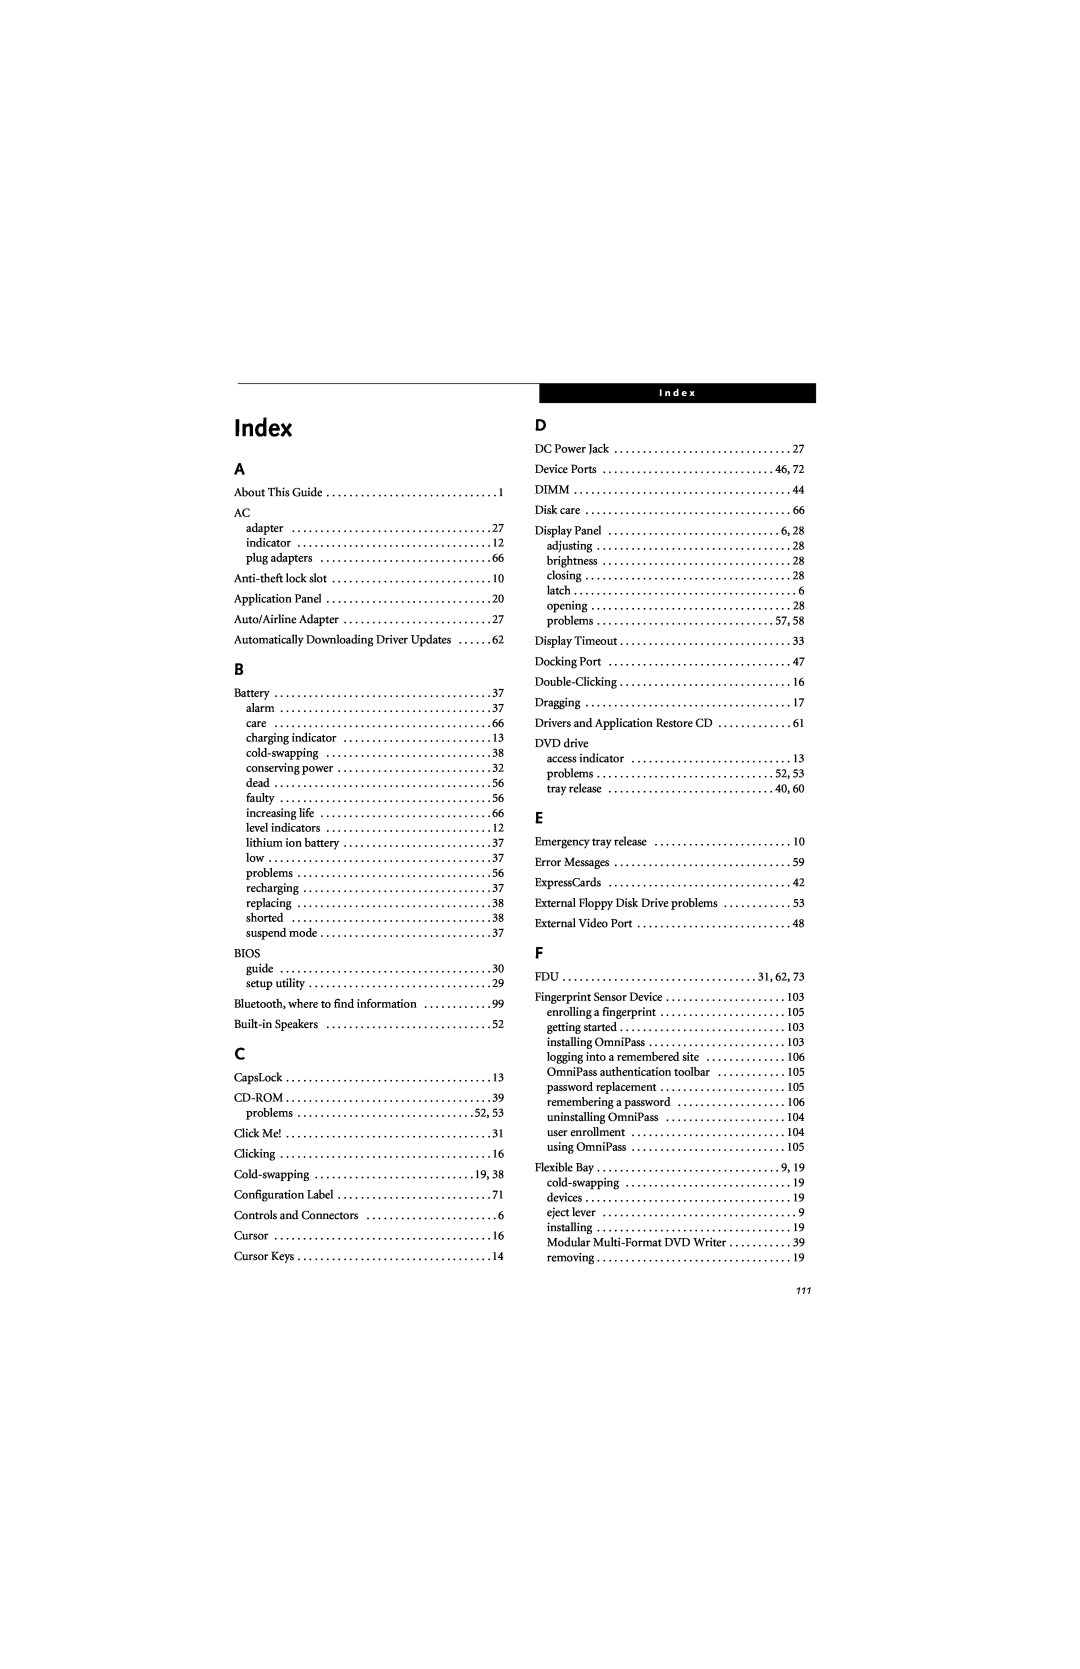 Fujitsu E8310 manual Index 